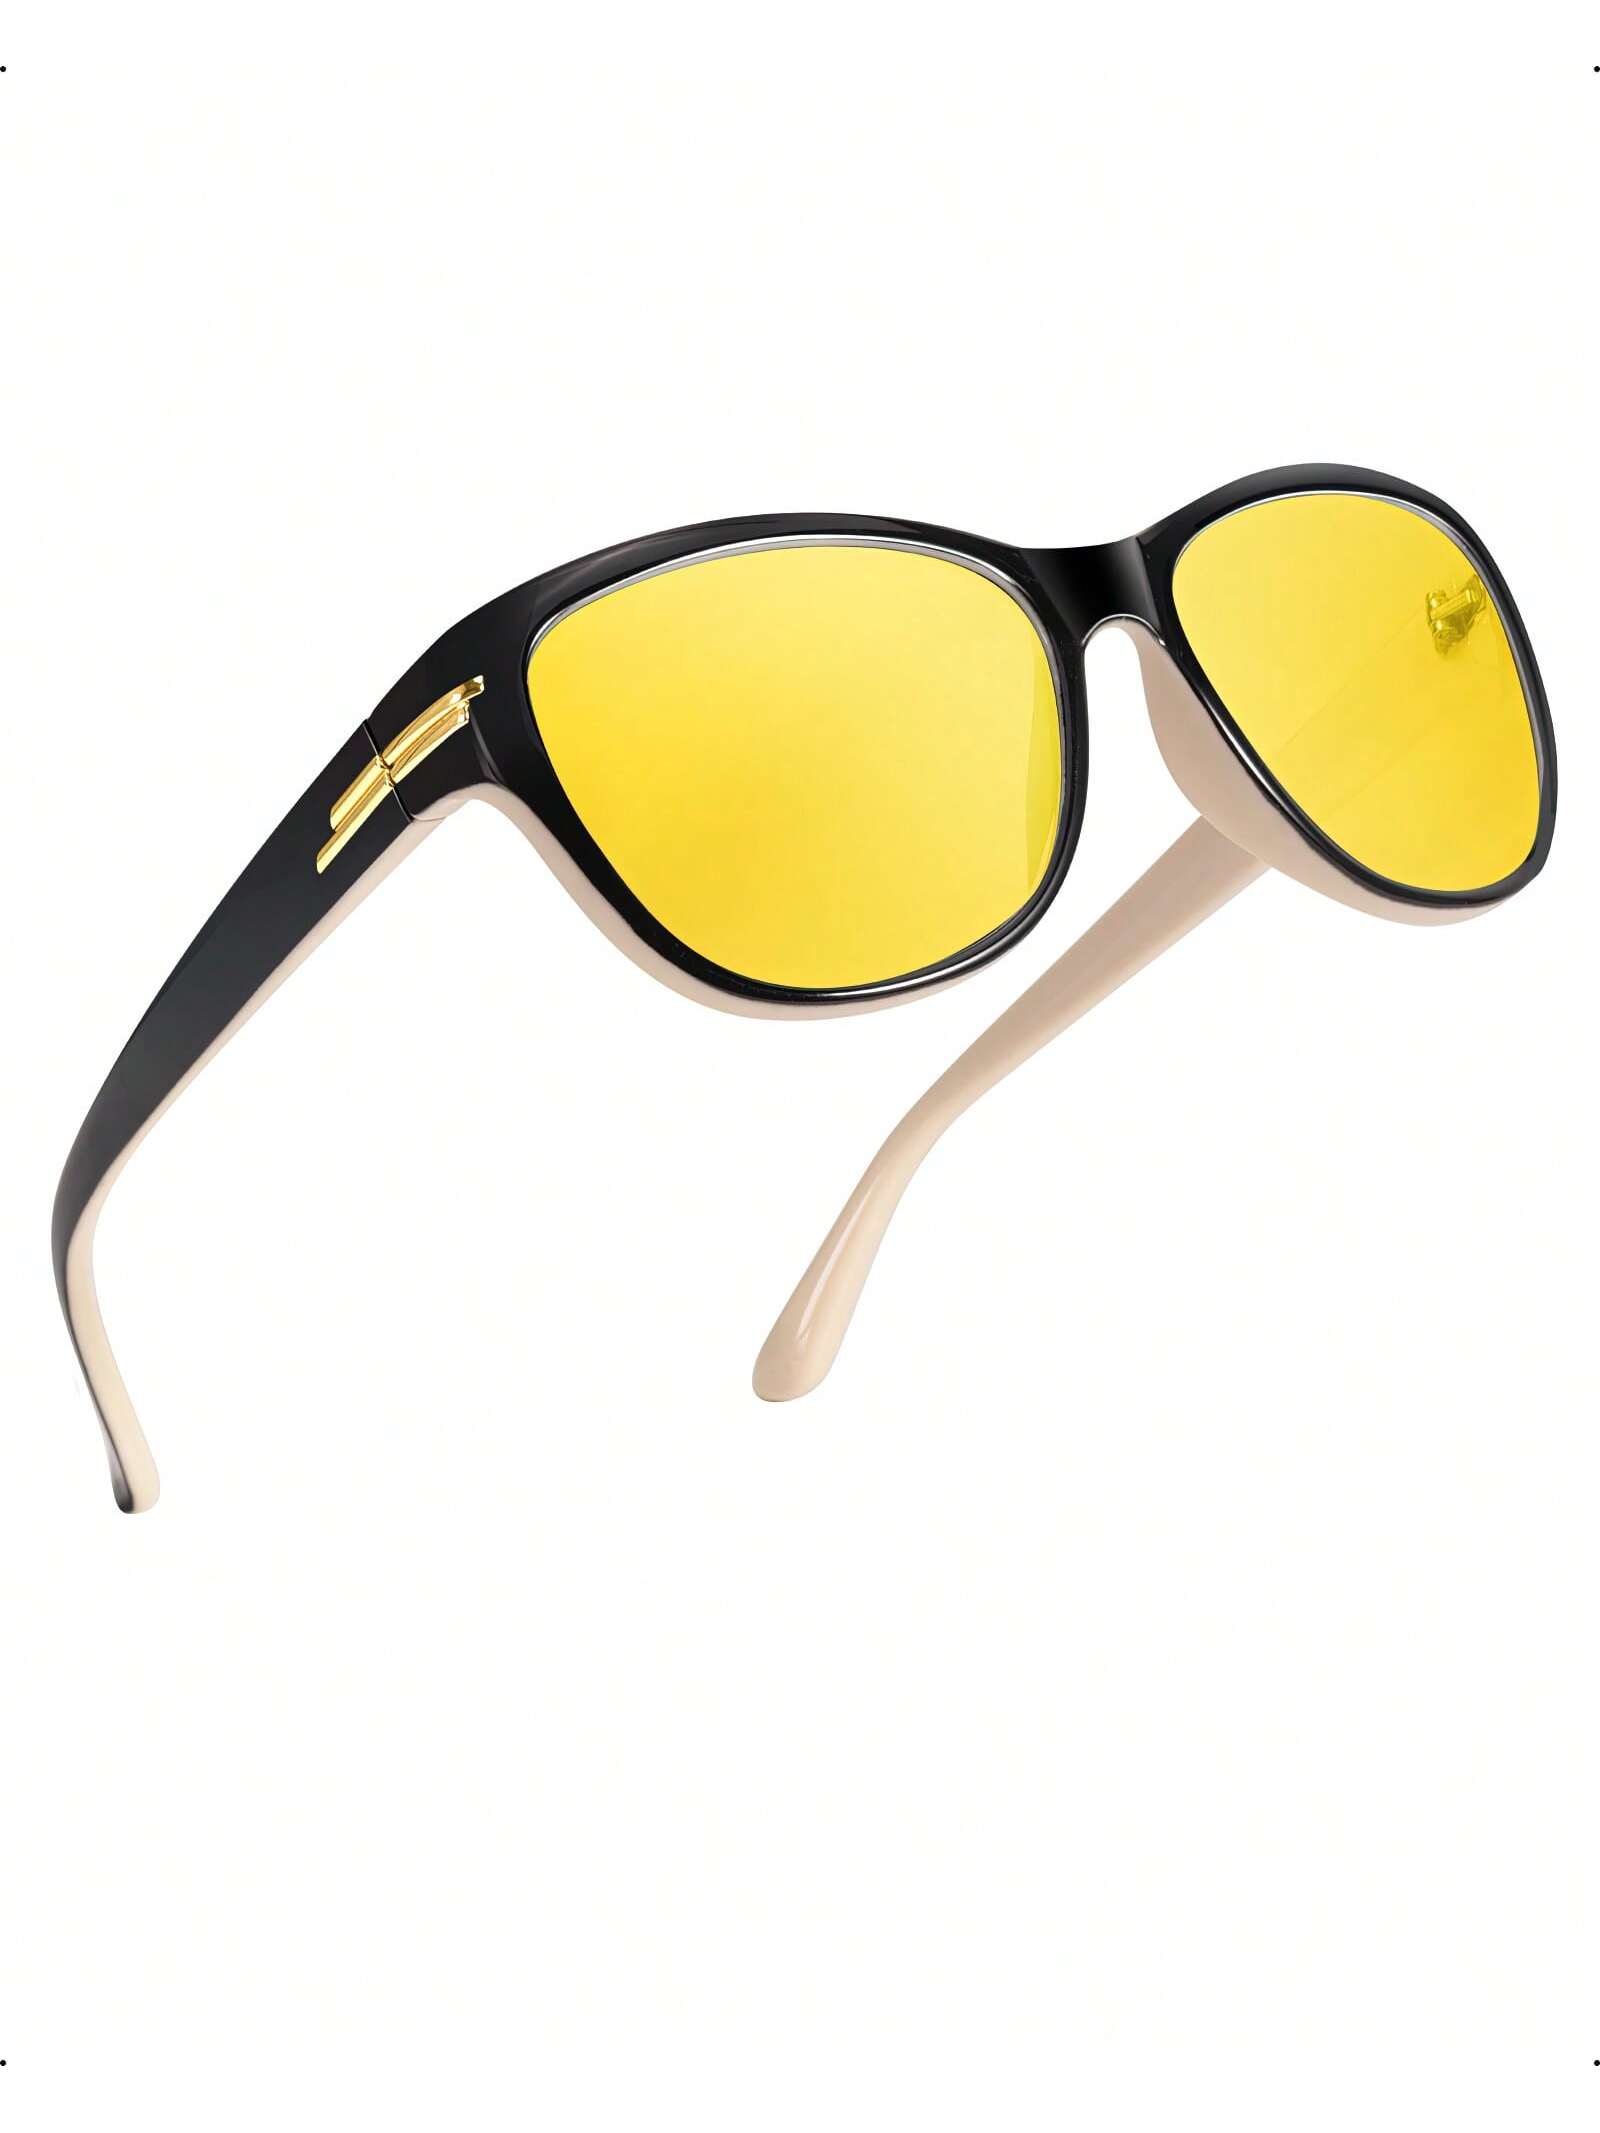 LVIOE 1 пара очков для ночного вождения для женщин и мужчин антибликовые поляризационные желтые очки ночного видения для ночного времени LN2317 1 шт очки ночного видения для женщин и мужчин